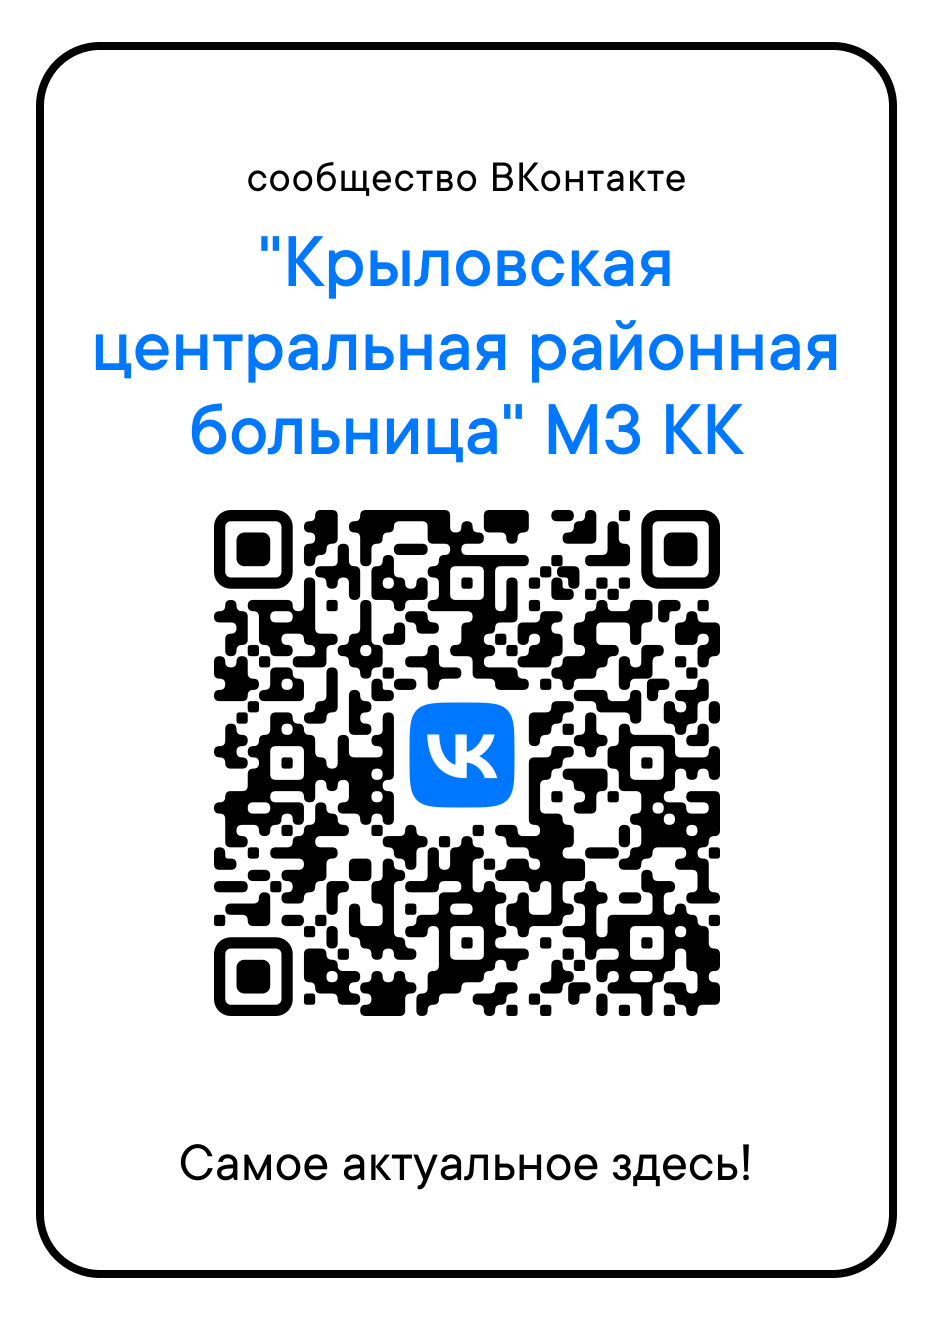 Ссылка на ВКонтакте